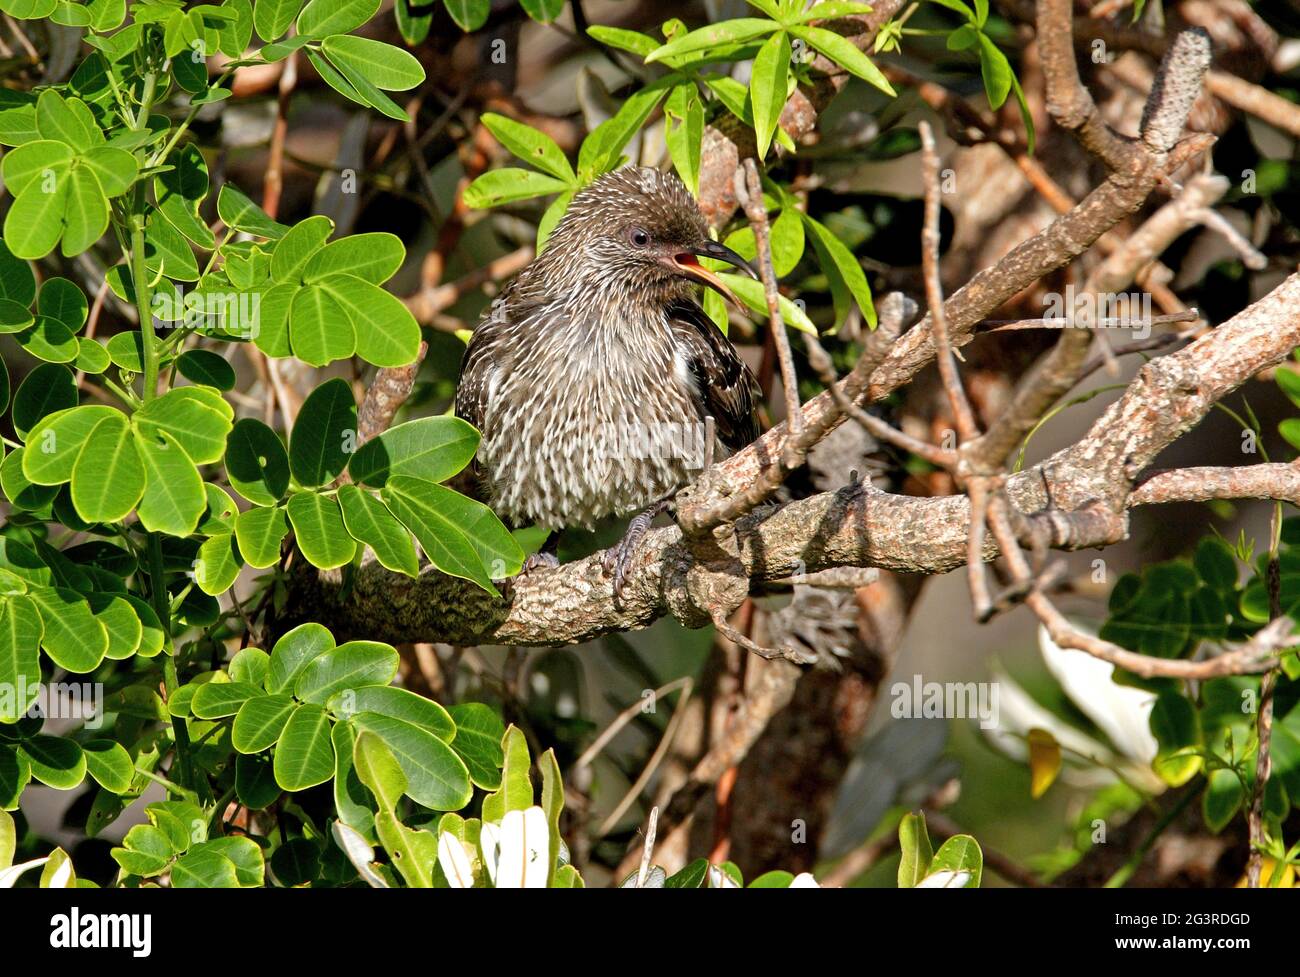 Petit oiseau de wattlebird (Anthochera chrysoptera chrysoptera) adulte perchée dans le Bush appelant la Nouvelle-Galles du Sud, Australie Janvier Banque D'Images